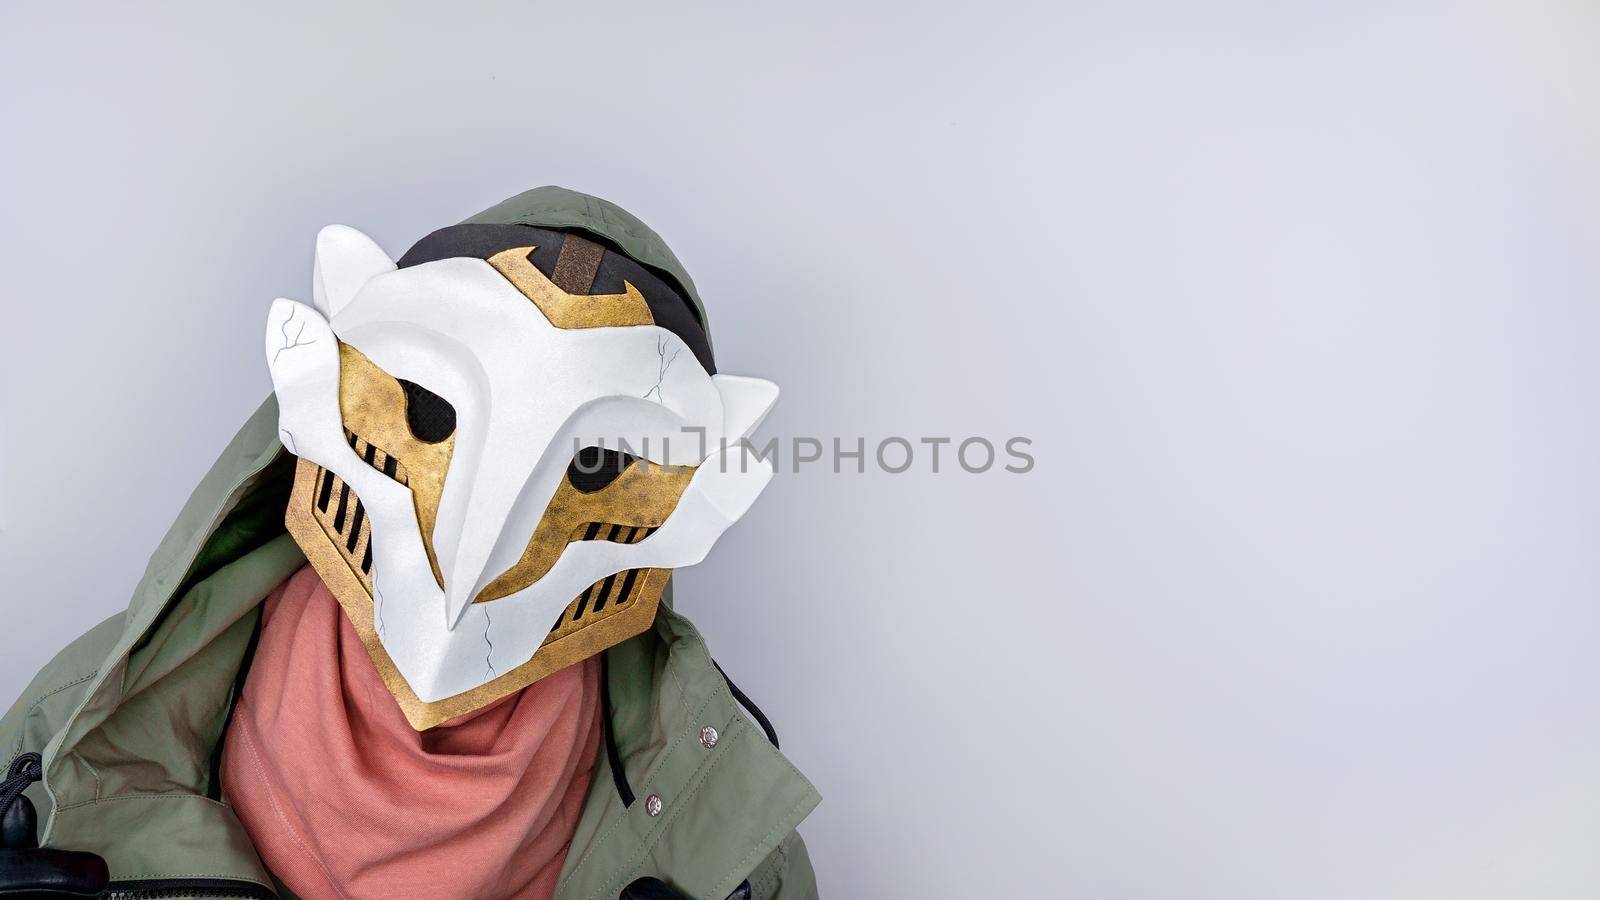 Ekko Firelight masked man from Arcane Netflix TV series. League of Legends. Popular tv show. Ekko's owl mask boy. June 18, 2022 - Gatineau, QC Canada. by JuliaDorian